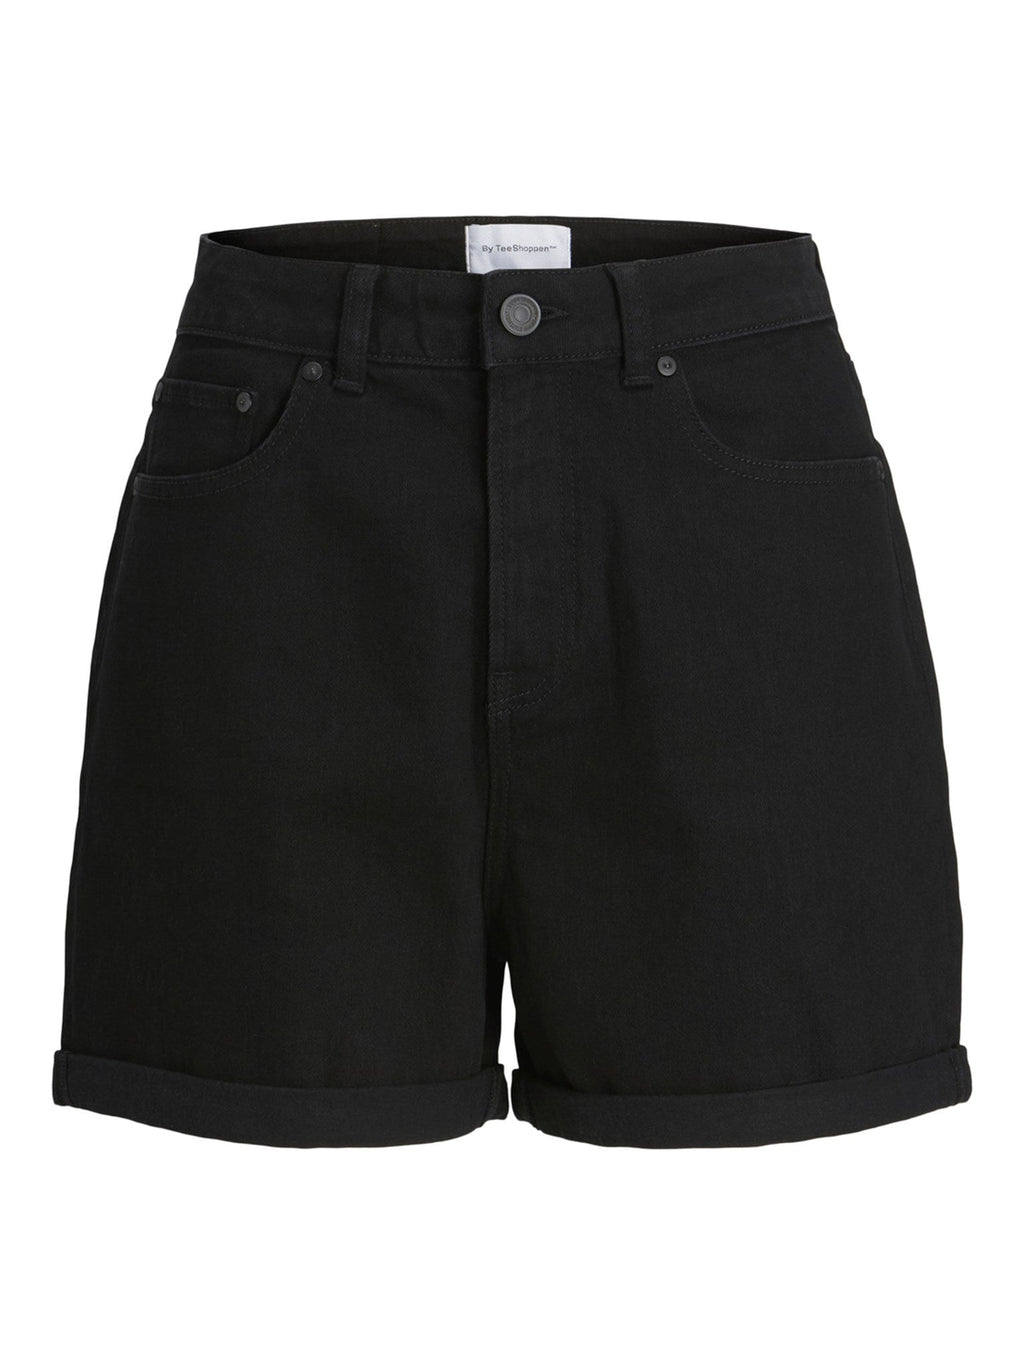 Le shorts de jean de performance originaux - Denim noir